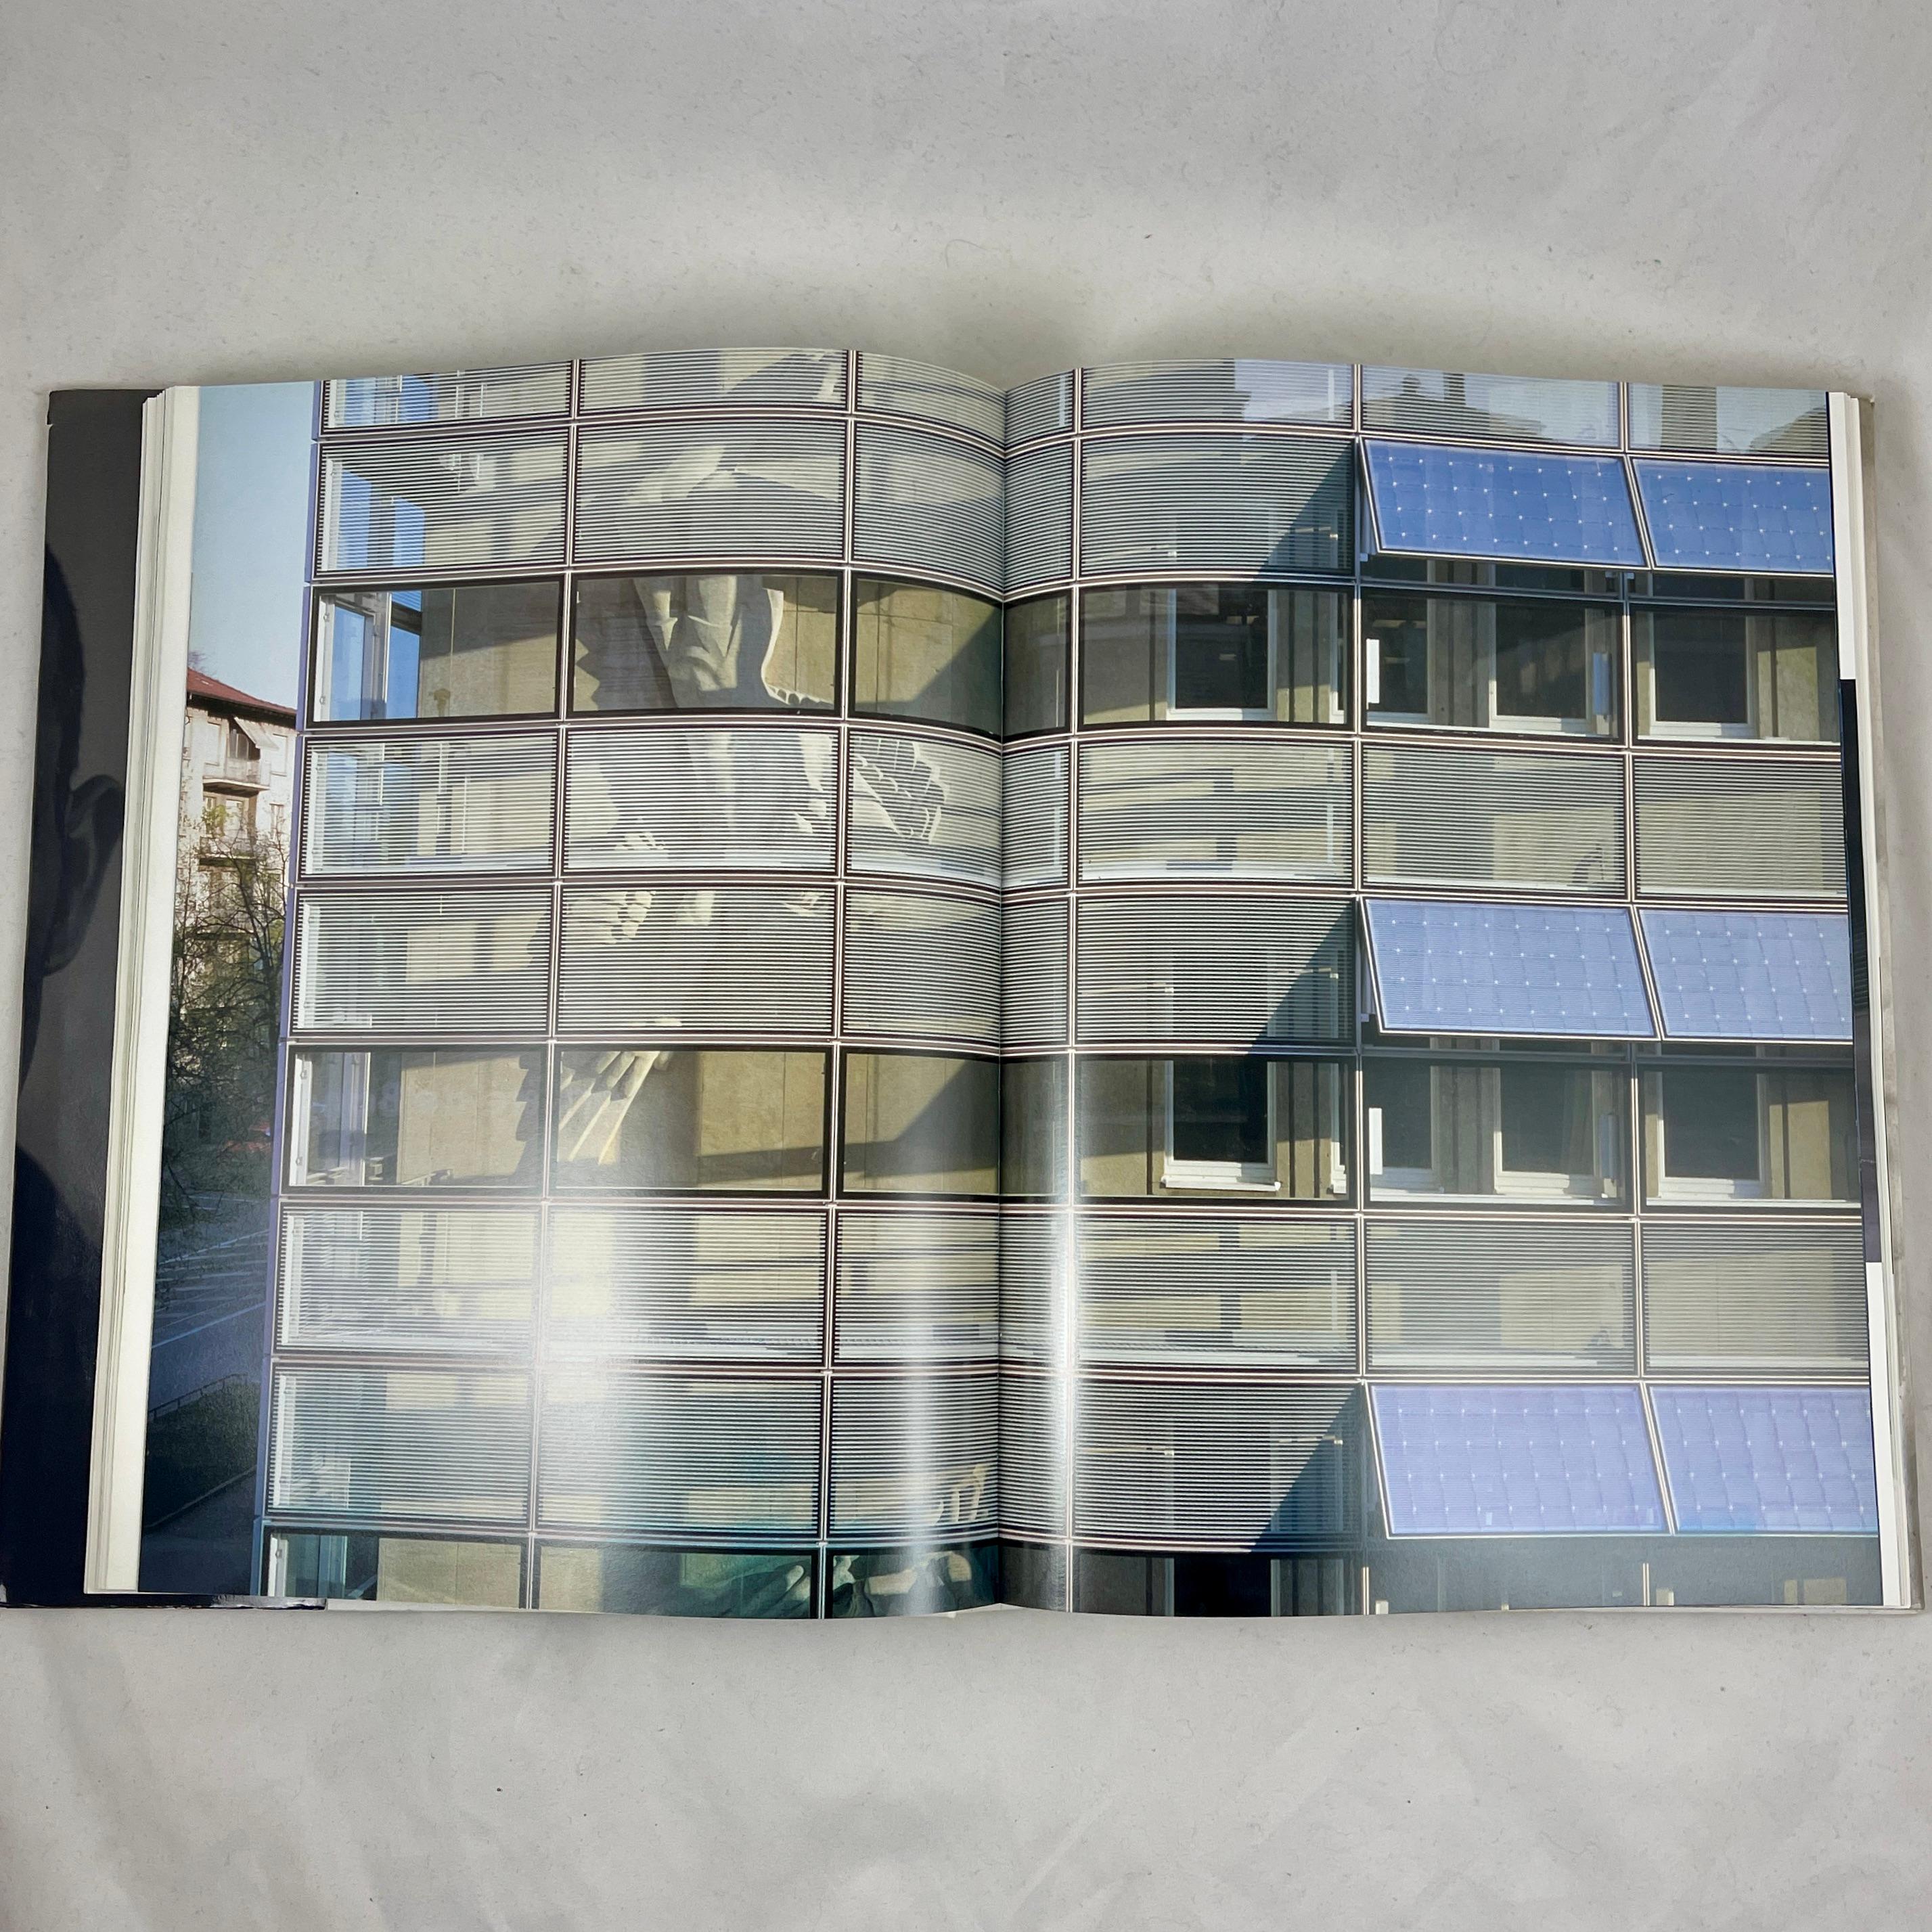 International Style Herzog & de Meuron 1981-2000 Architecture Hardbound Book